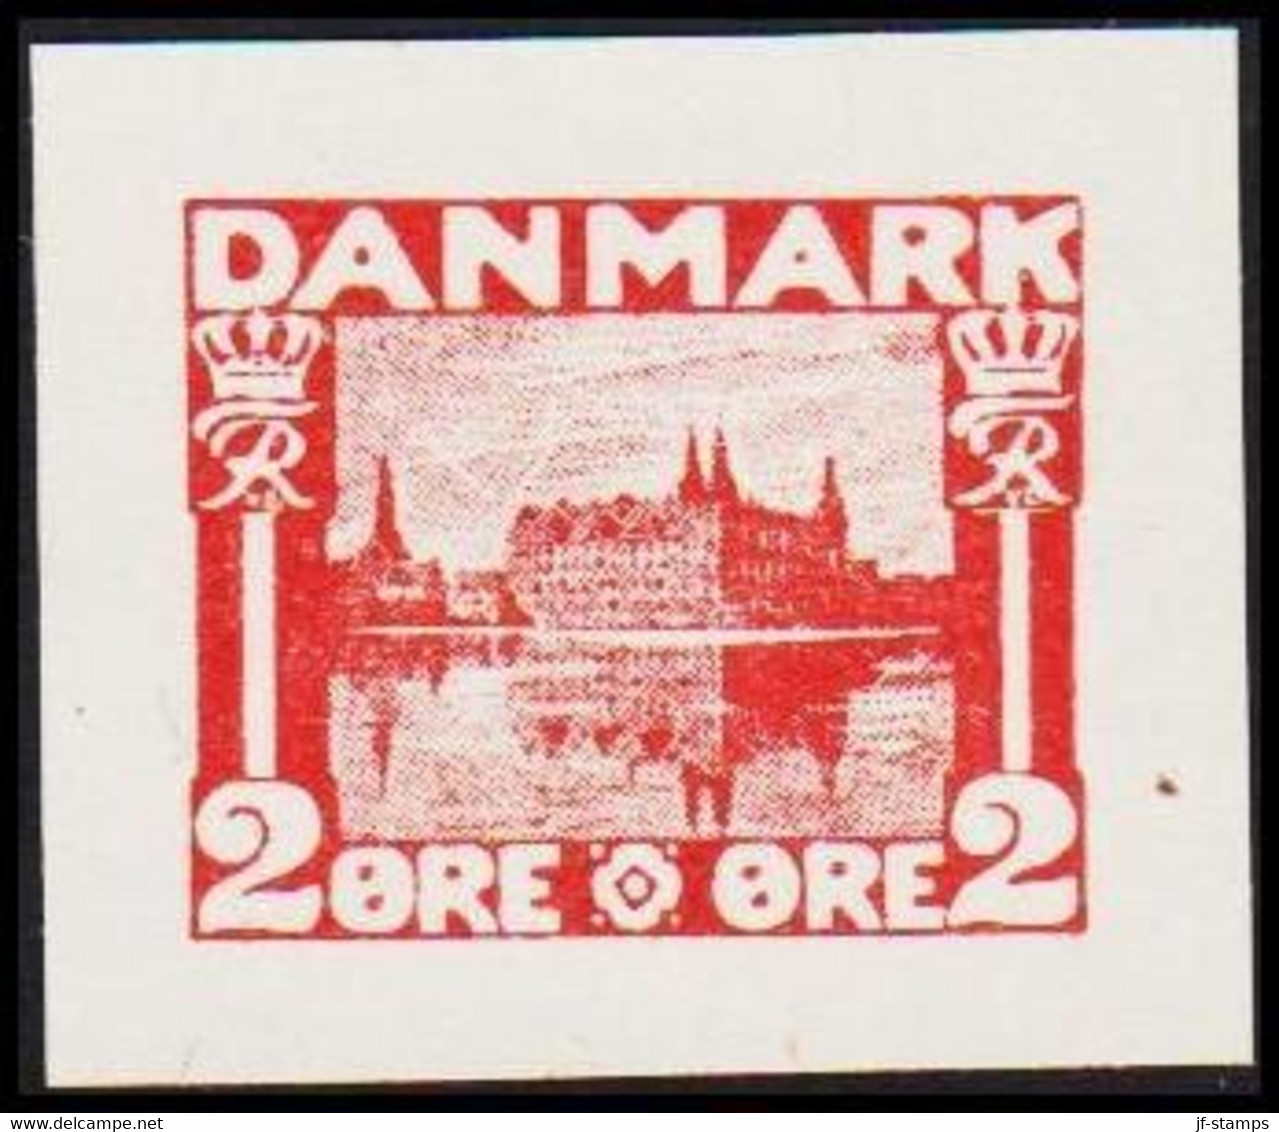 1930. DANMARK. Essay. København - Frederiksborg Slot. 2 øre. - JF525403 - Prove E Ristampe